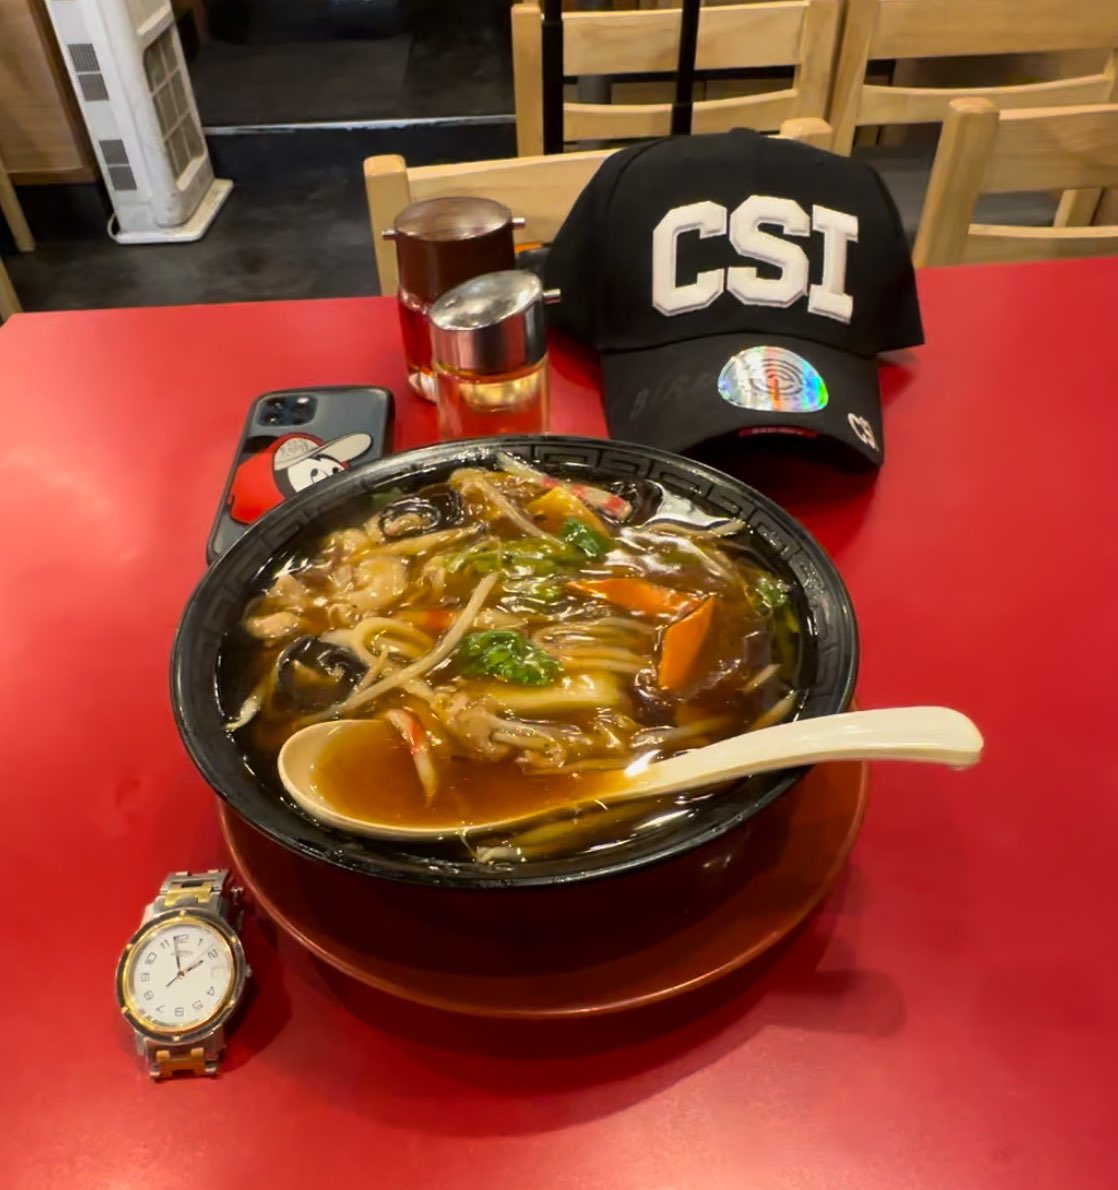 新大久保　一番館で　広東麺を　食べました　　　😊💕

とても　美味しかったです　　🍀✈️